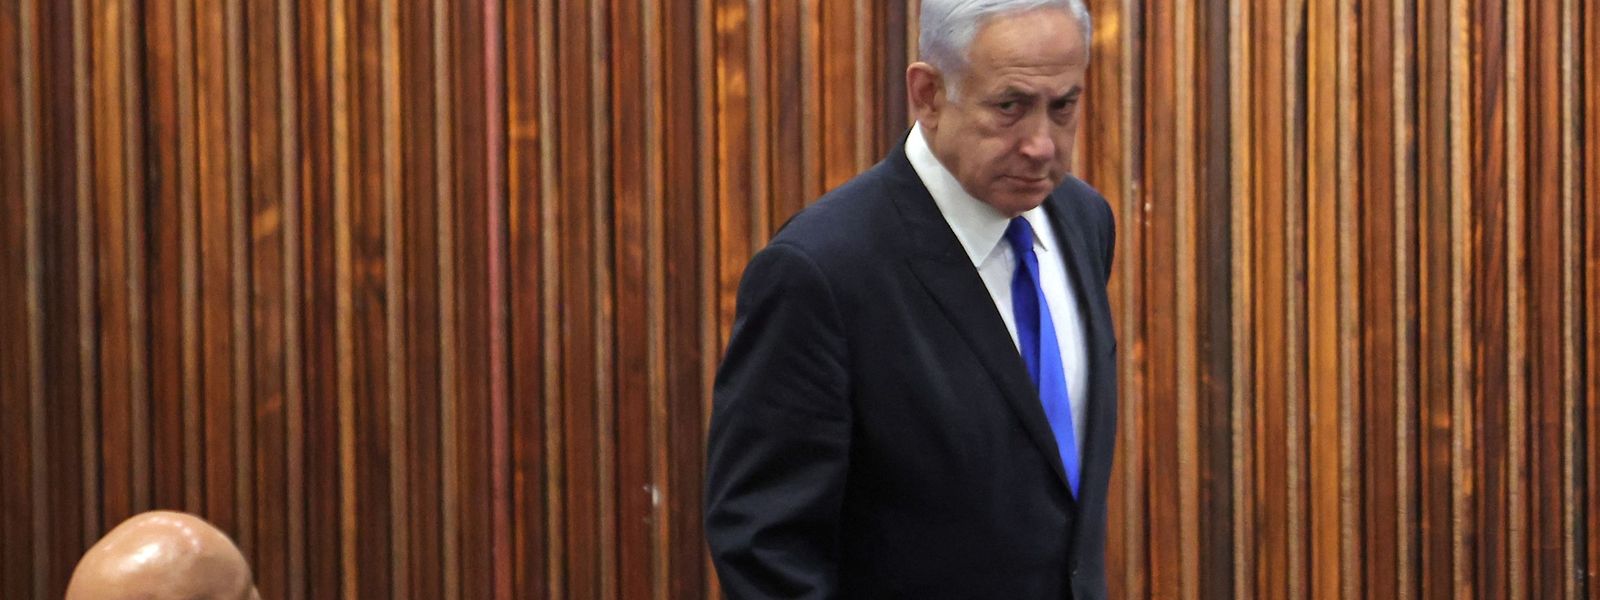 Israel sei ein souveränes Land, das Entscheidungen nicht auf Druck aus dem Ausland hin treffe, „auch nicht von den besten Freunden“, so der israelische Premier Benjamin Netanjahu.